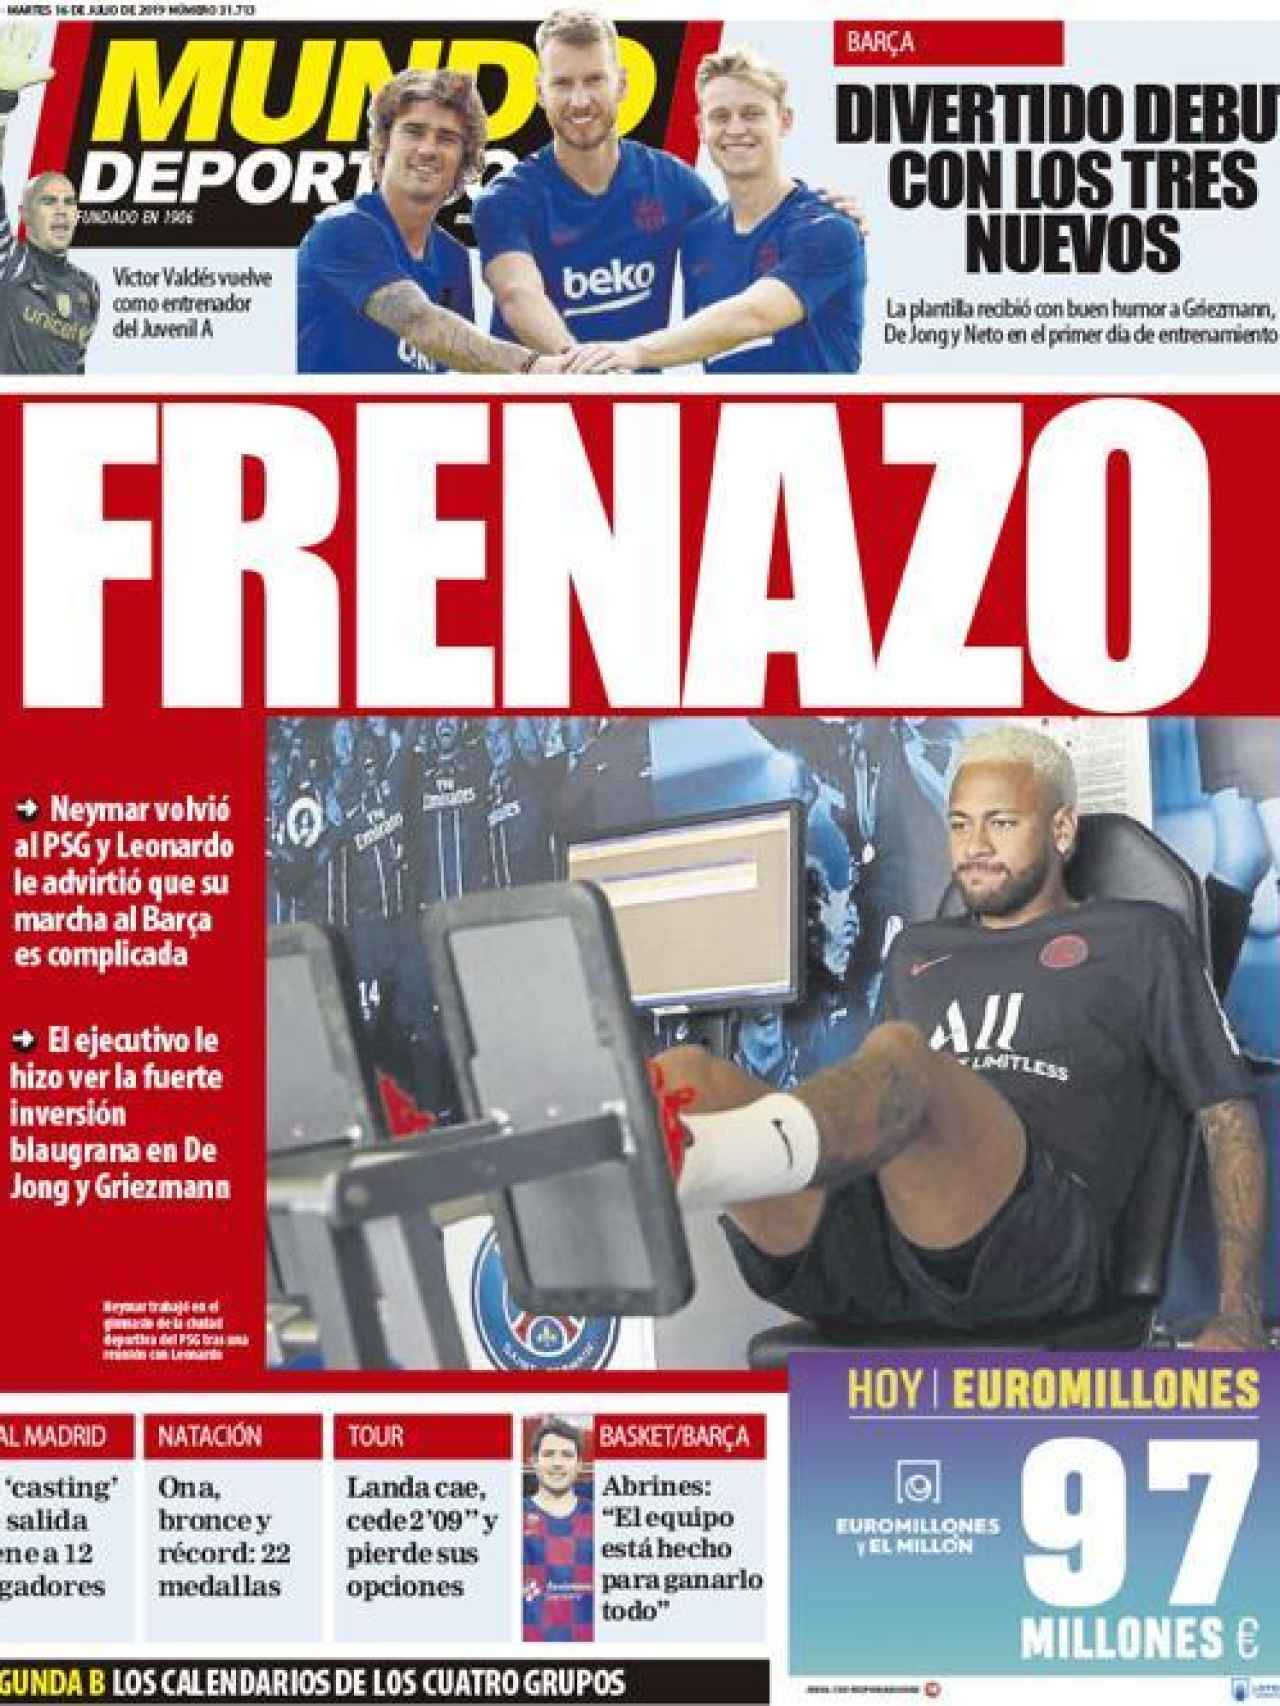 La portada del diario Mundo Deportivo (16/07/2019)